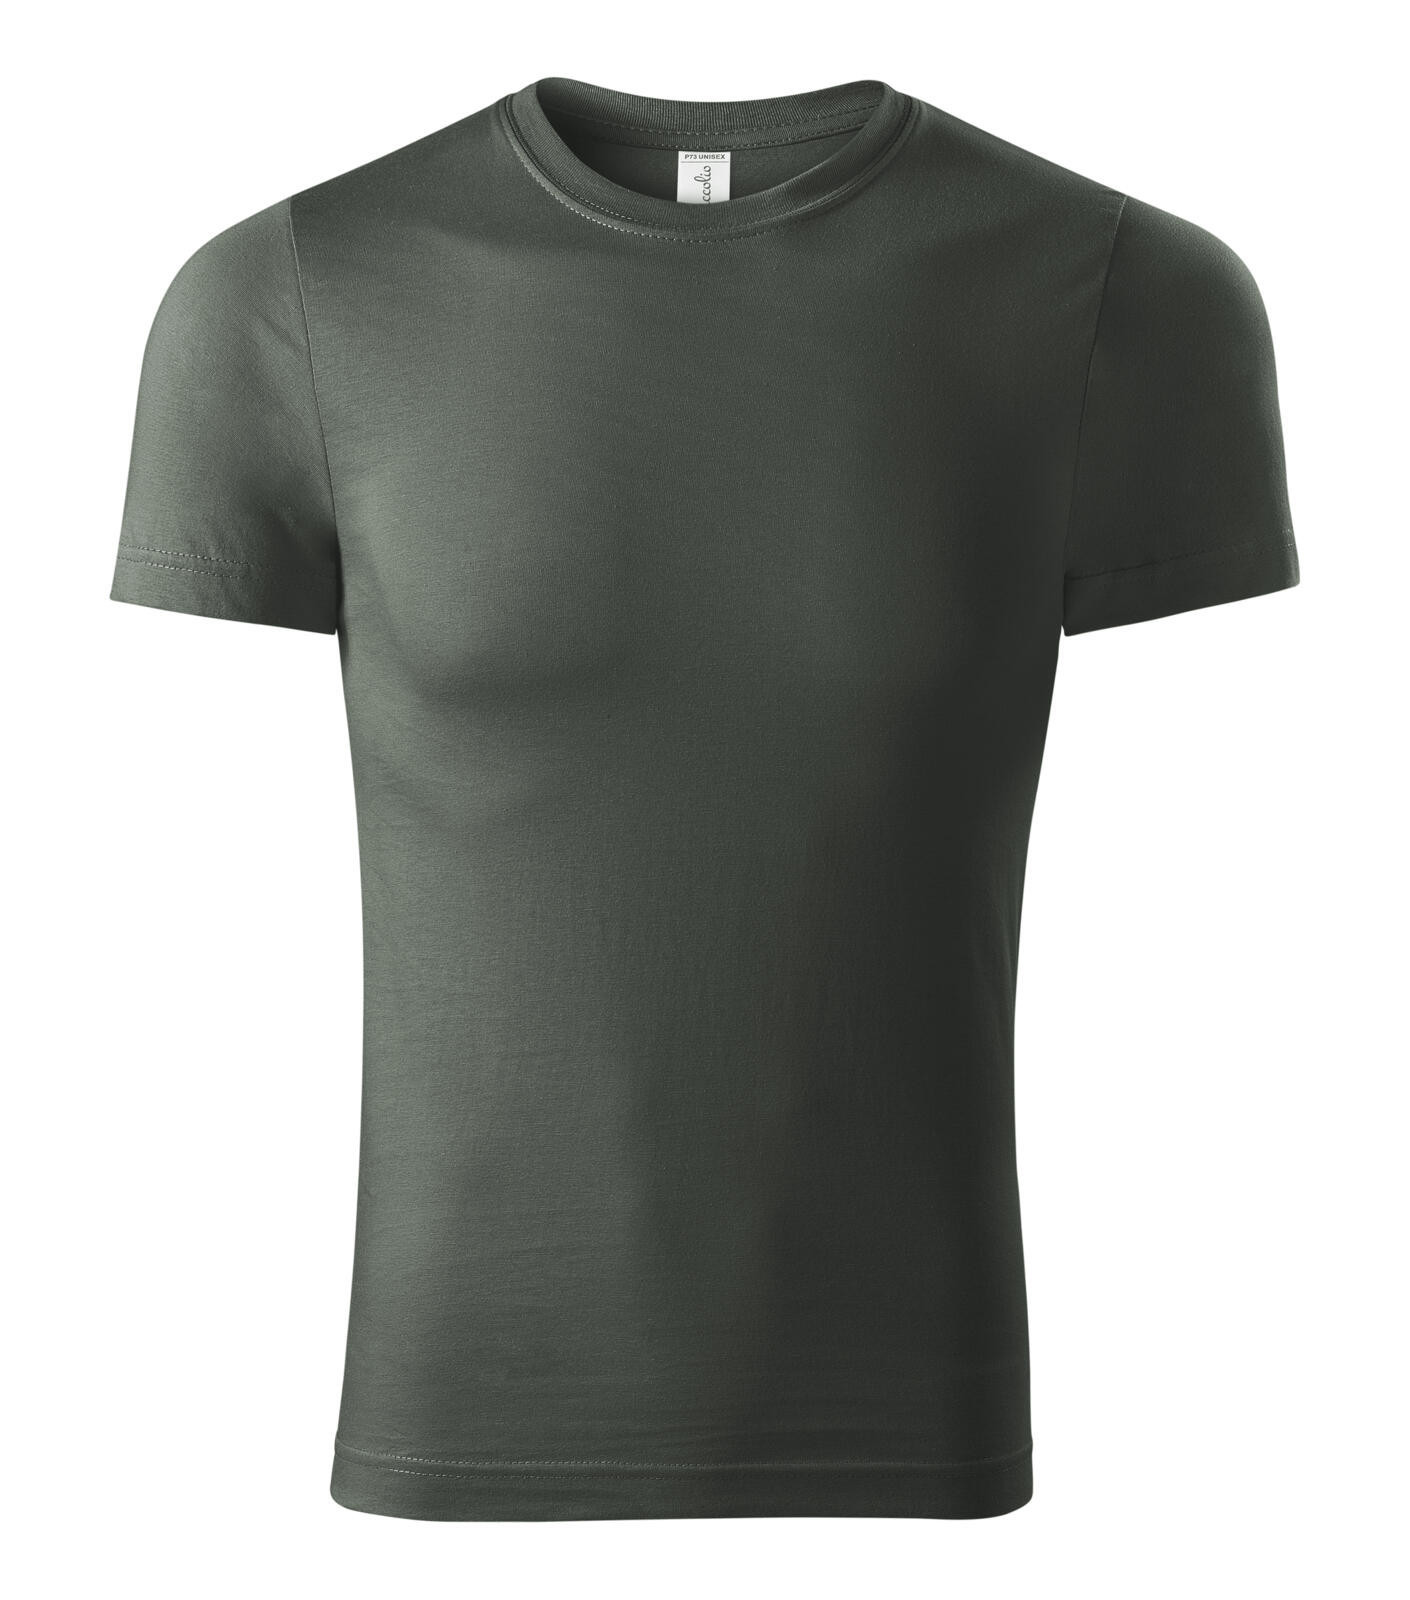 Unisex tričko Piccolio Paint P73 - veľkosť: XL, farba: tmavá bridlica